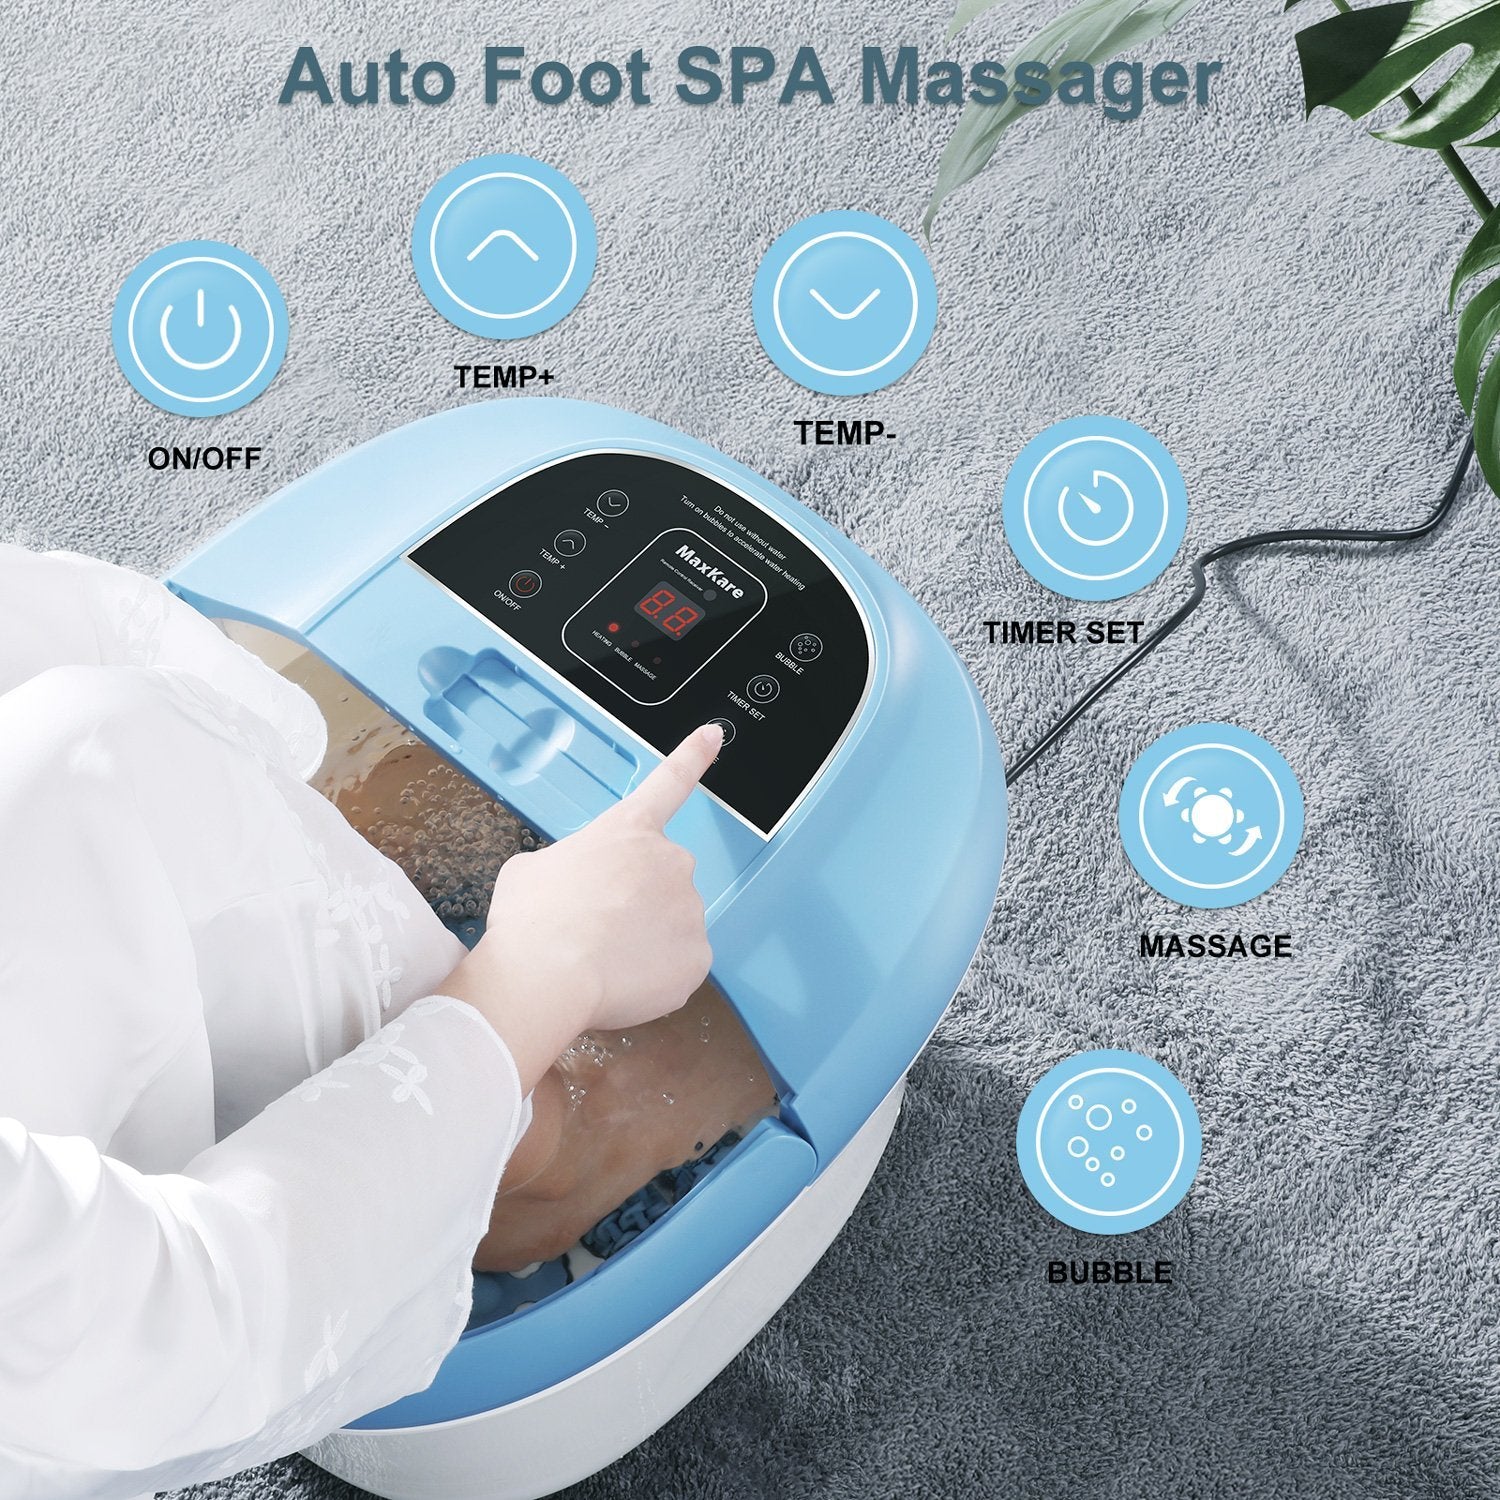 MaxKare Foot Bath Spa Massager: – Remote Rollers Control, 8 MAXKARE Wireless Shiatsu